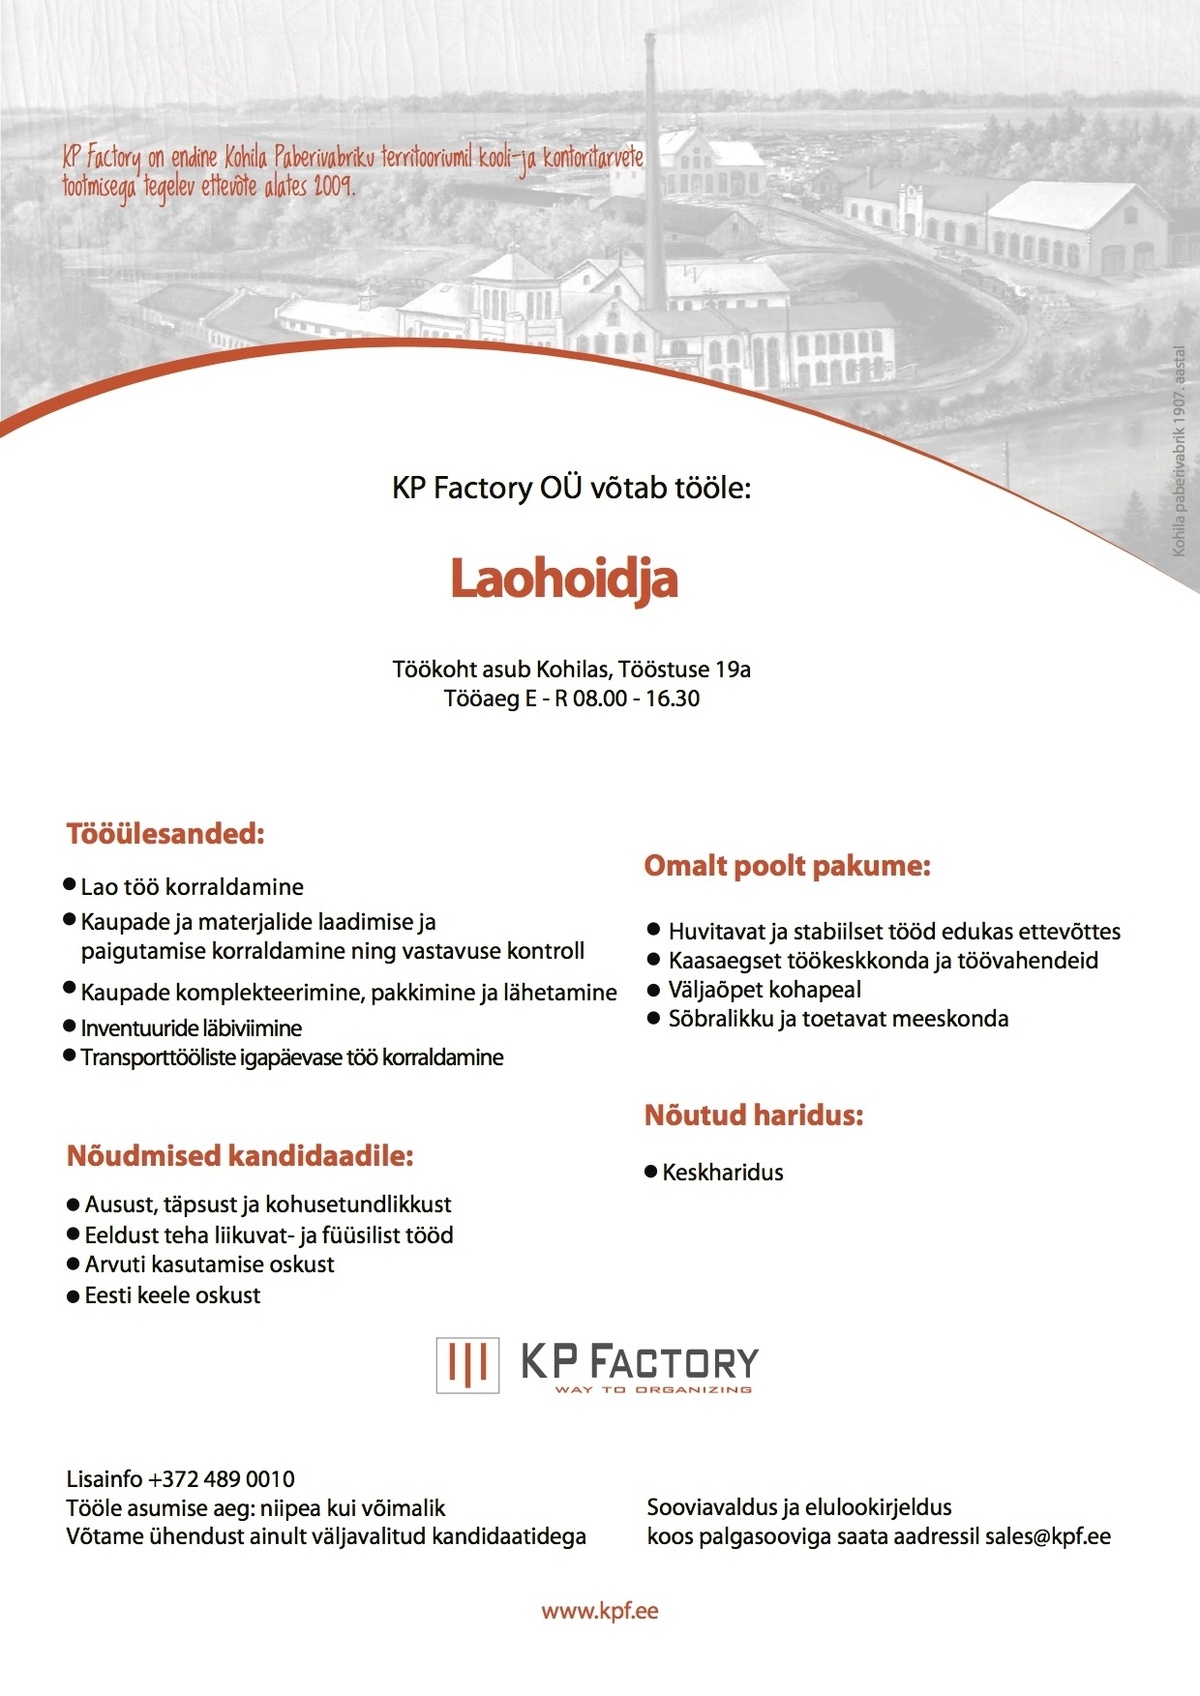 KP Factory OÜ Laohoidja